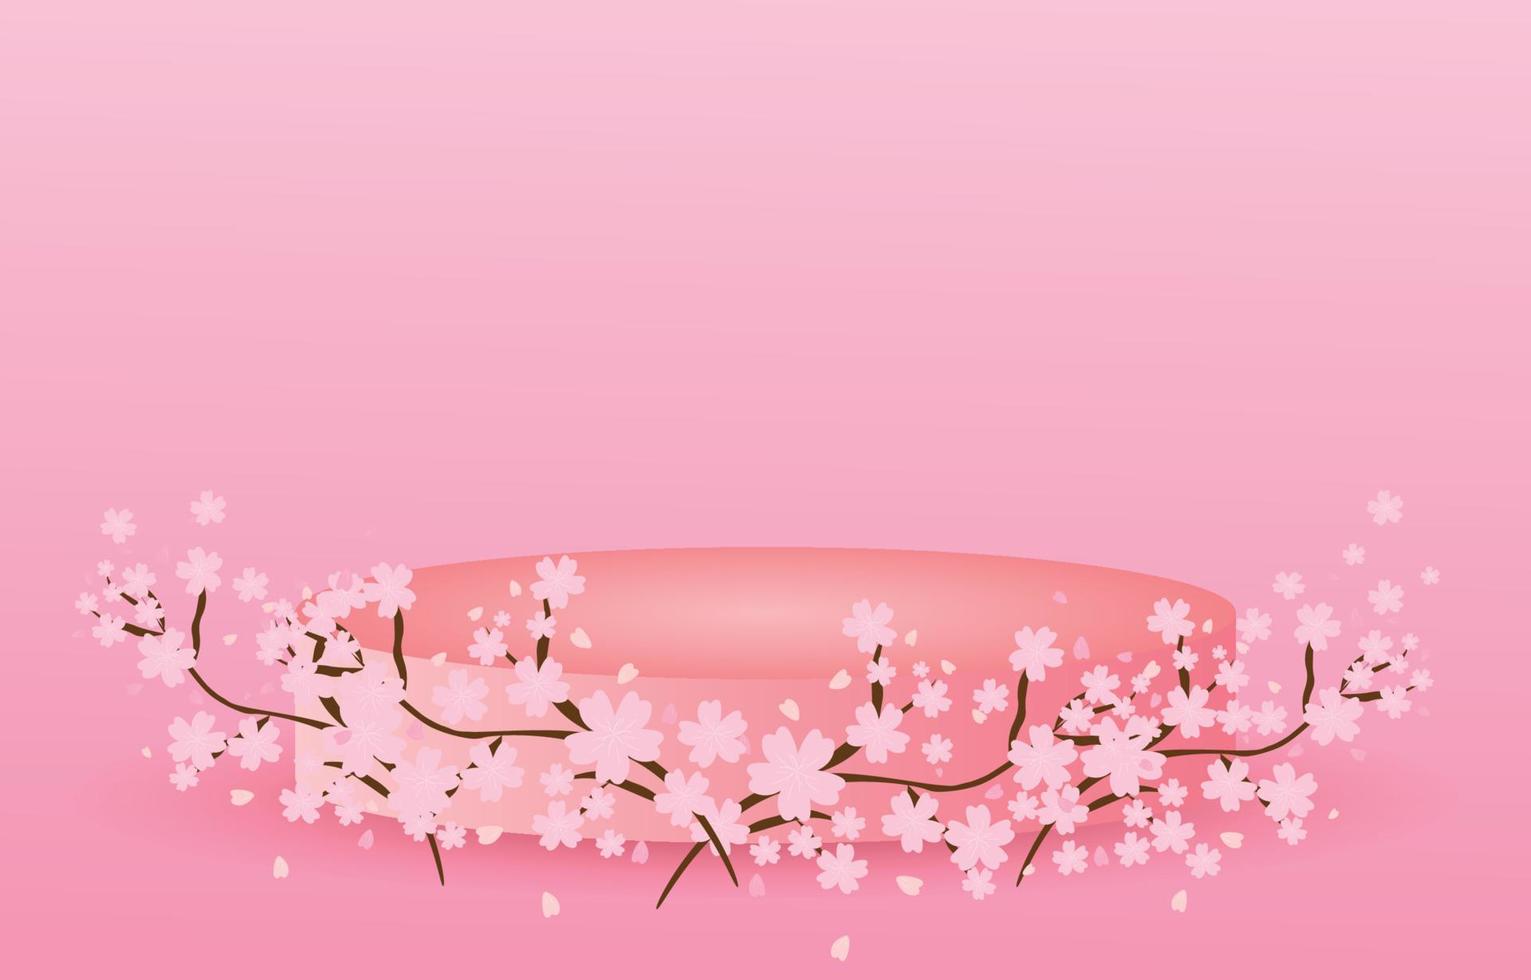 roze sakura versierd met rond voetstuk, met vrije ruimte voor ontwerp, lentebloem achtergrond illustratie vector